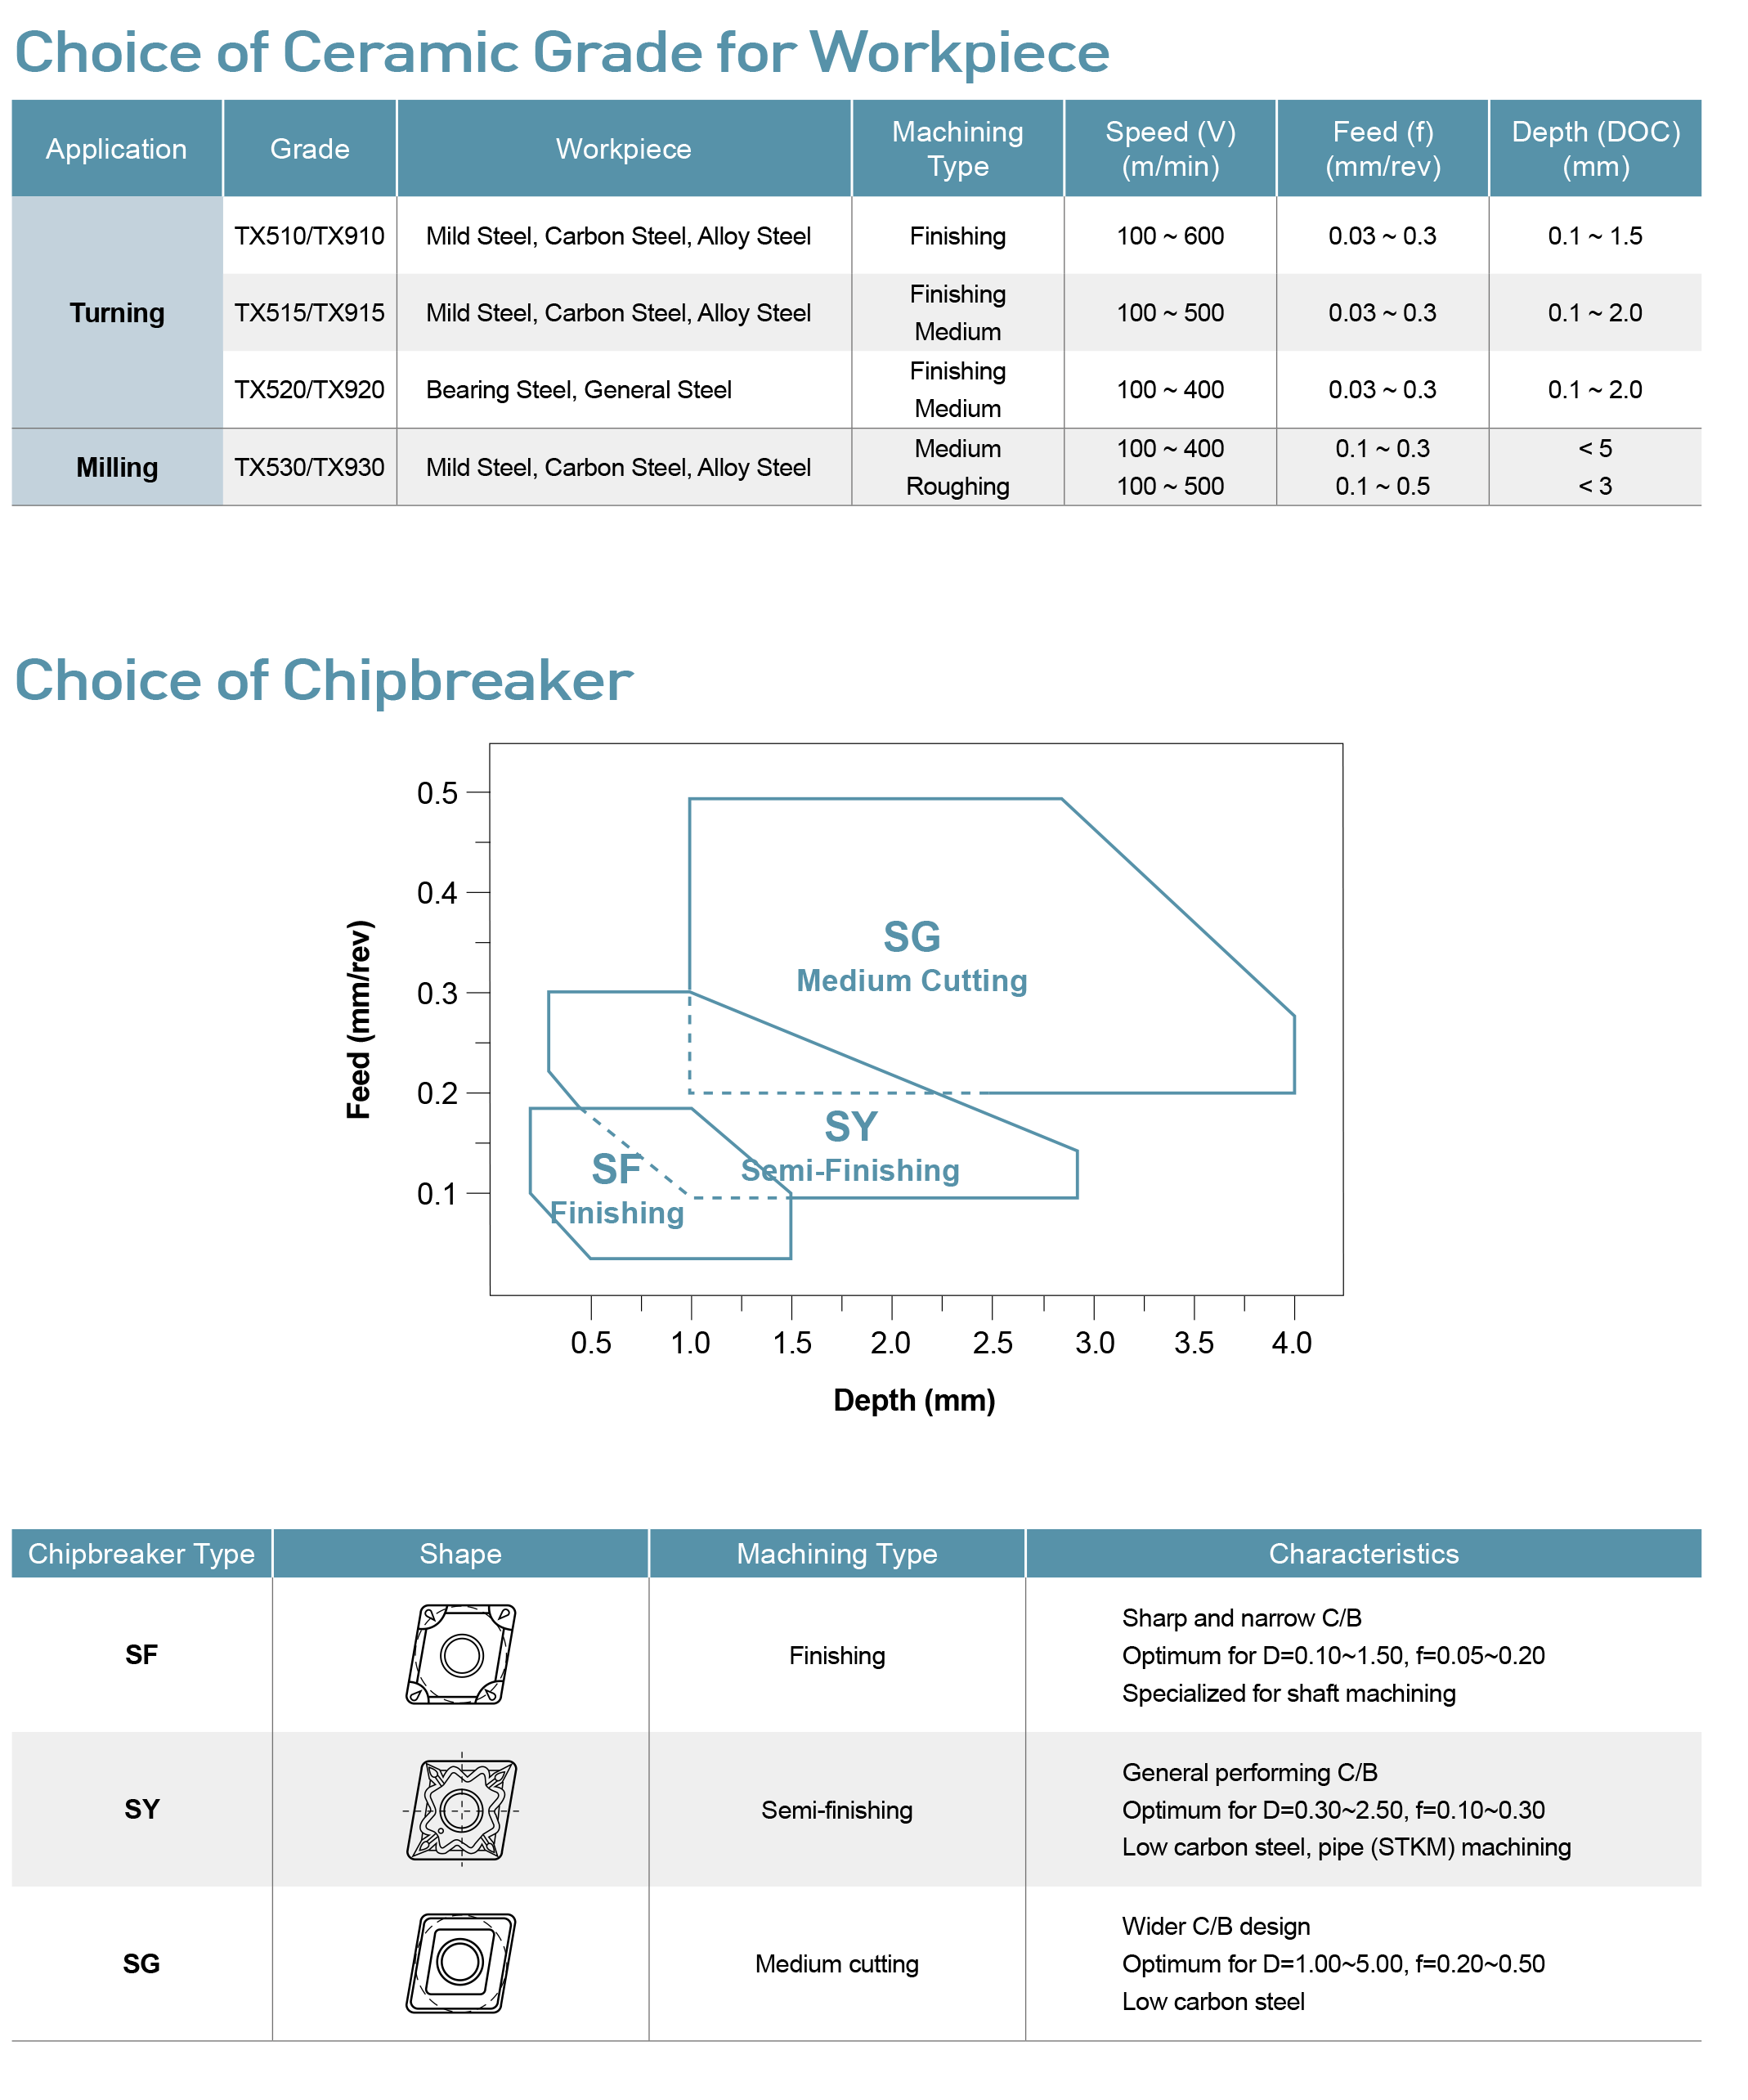 chipbreaker